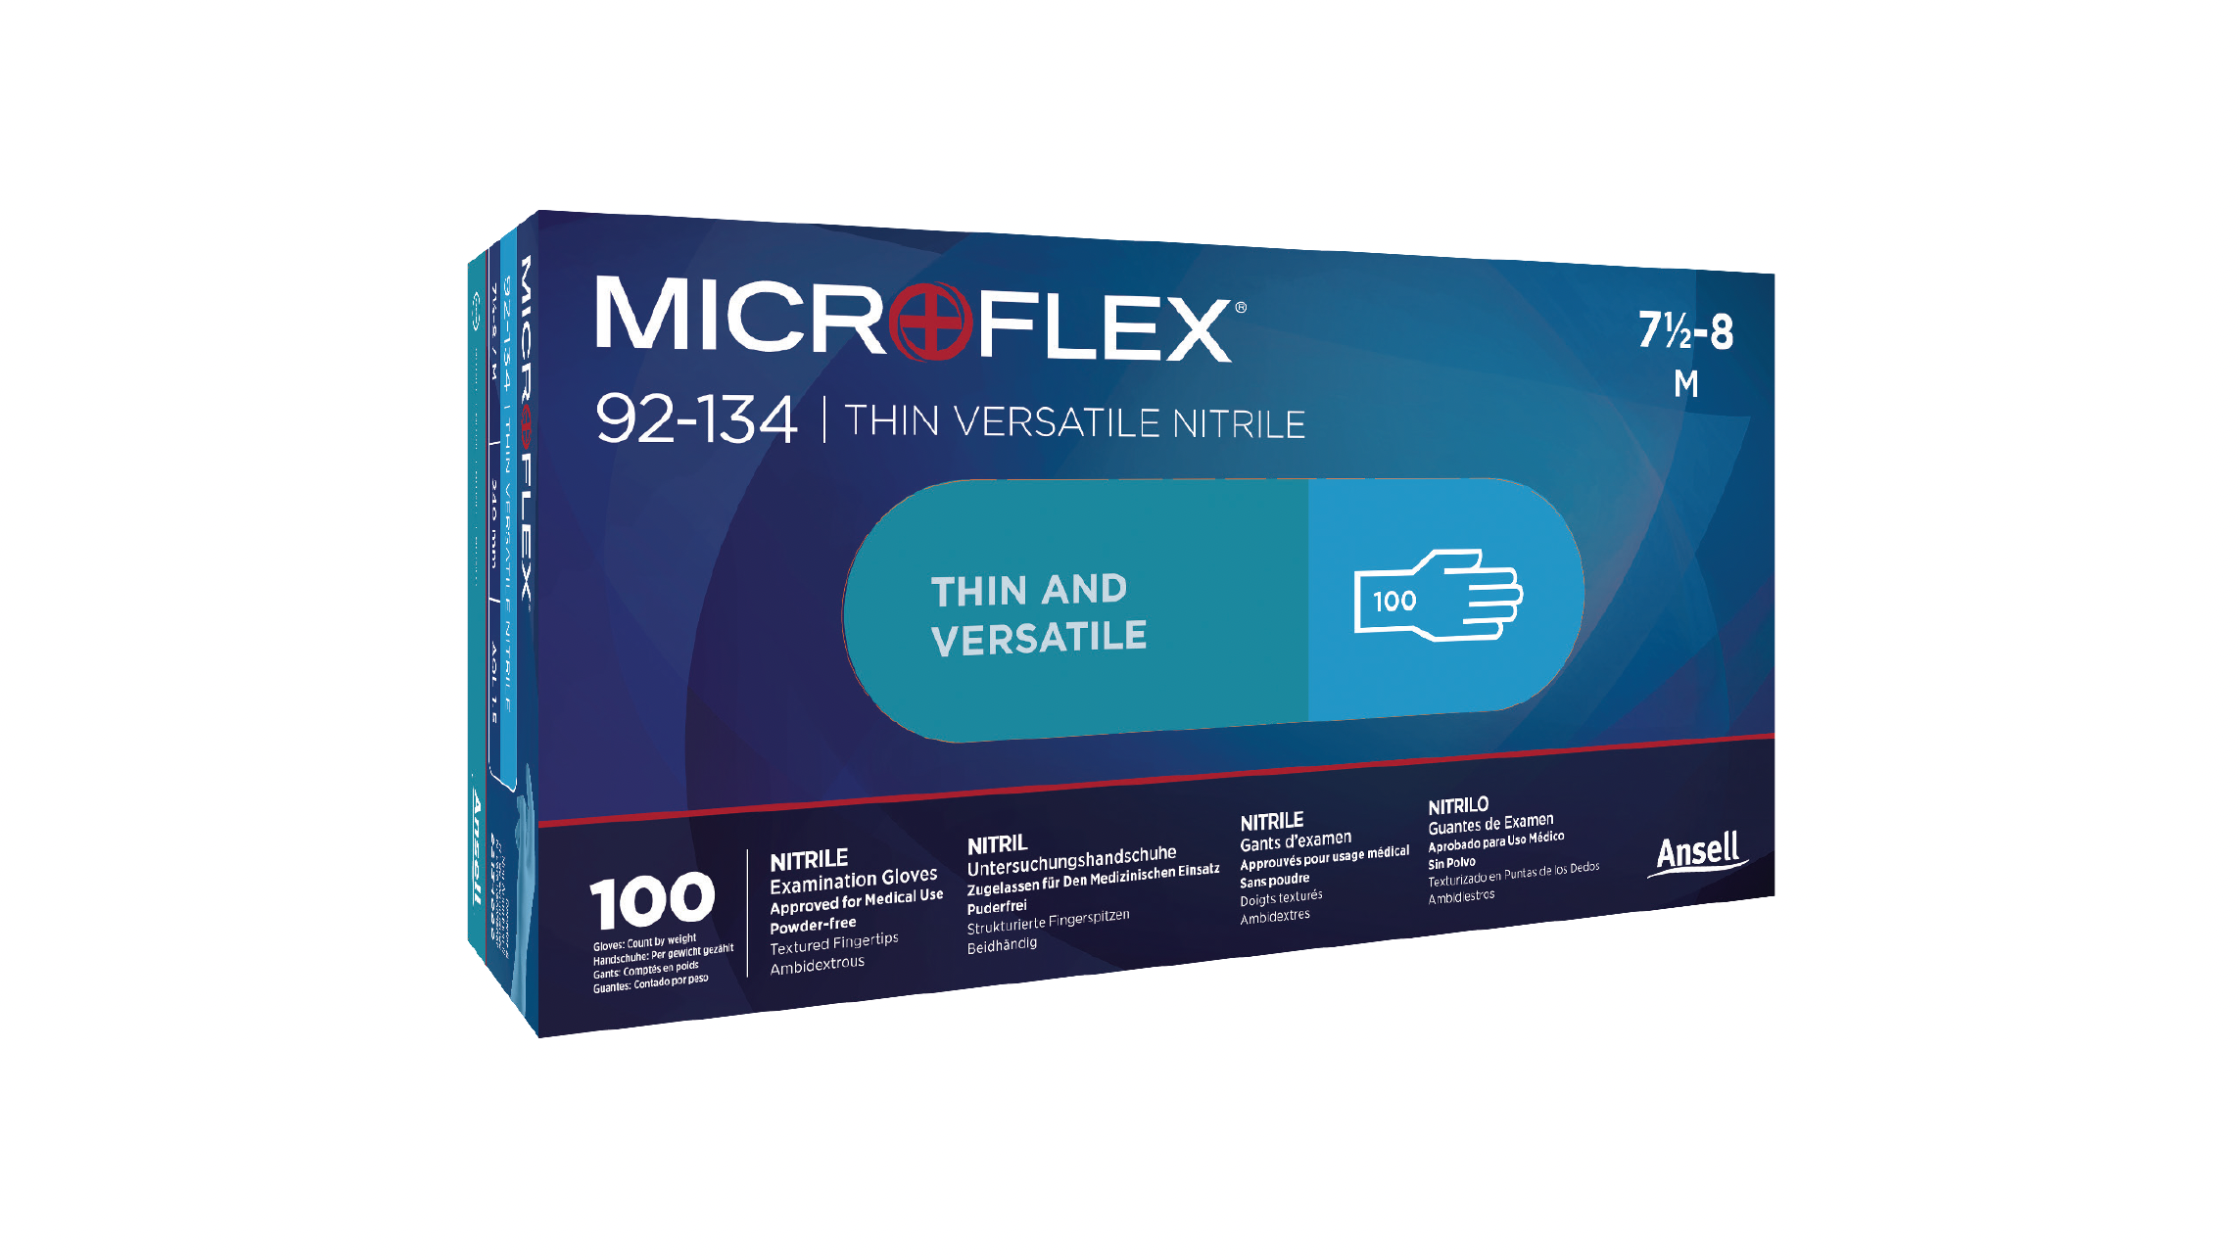 Microflex 92-134 Versatility Nitrile Gloves